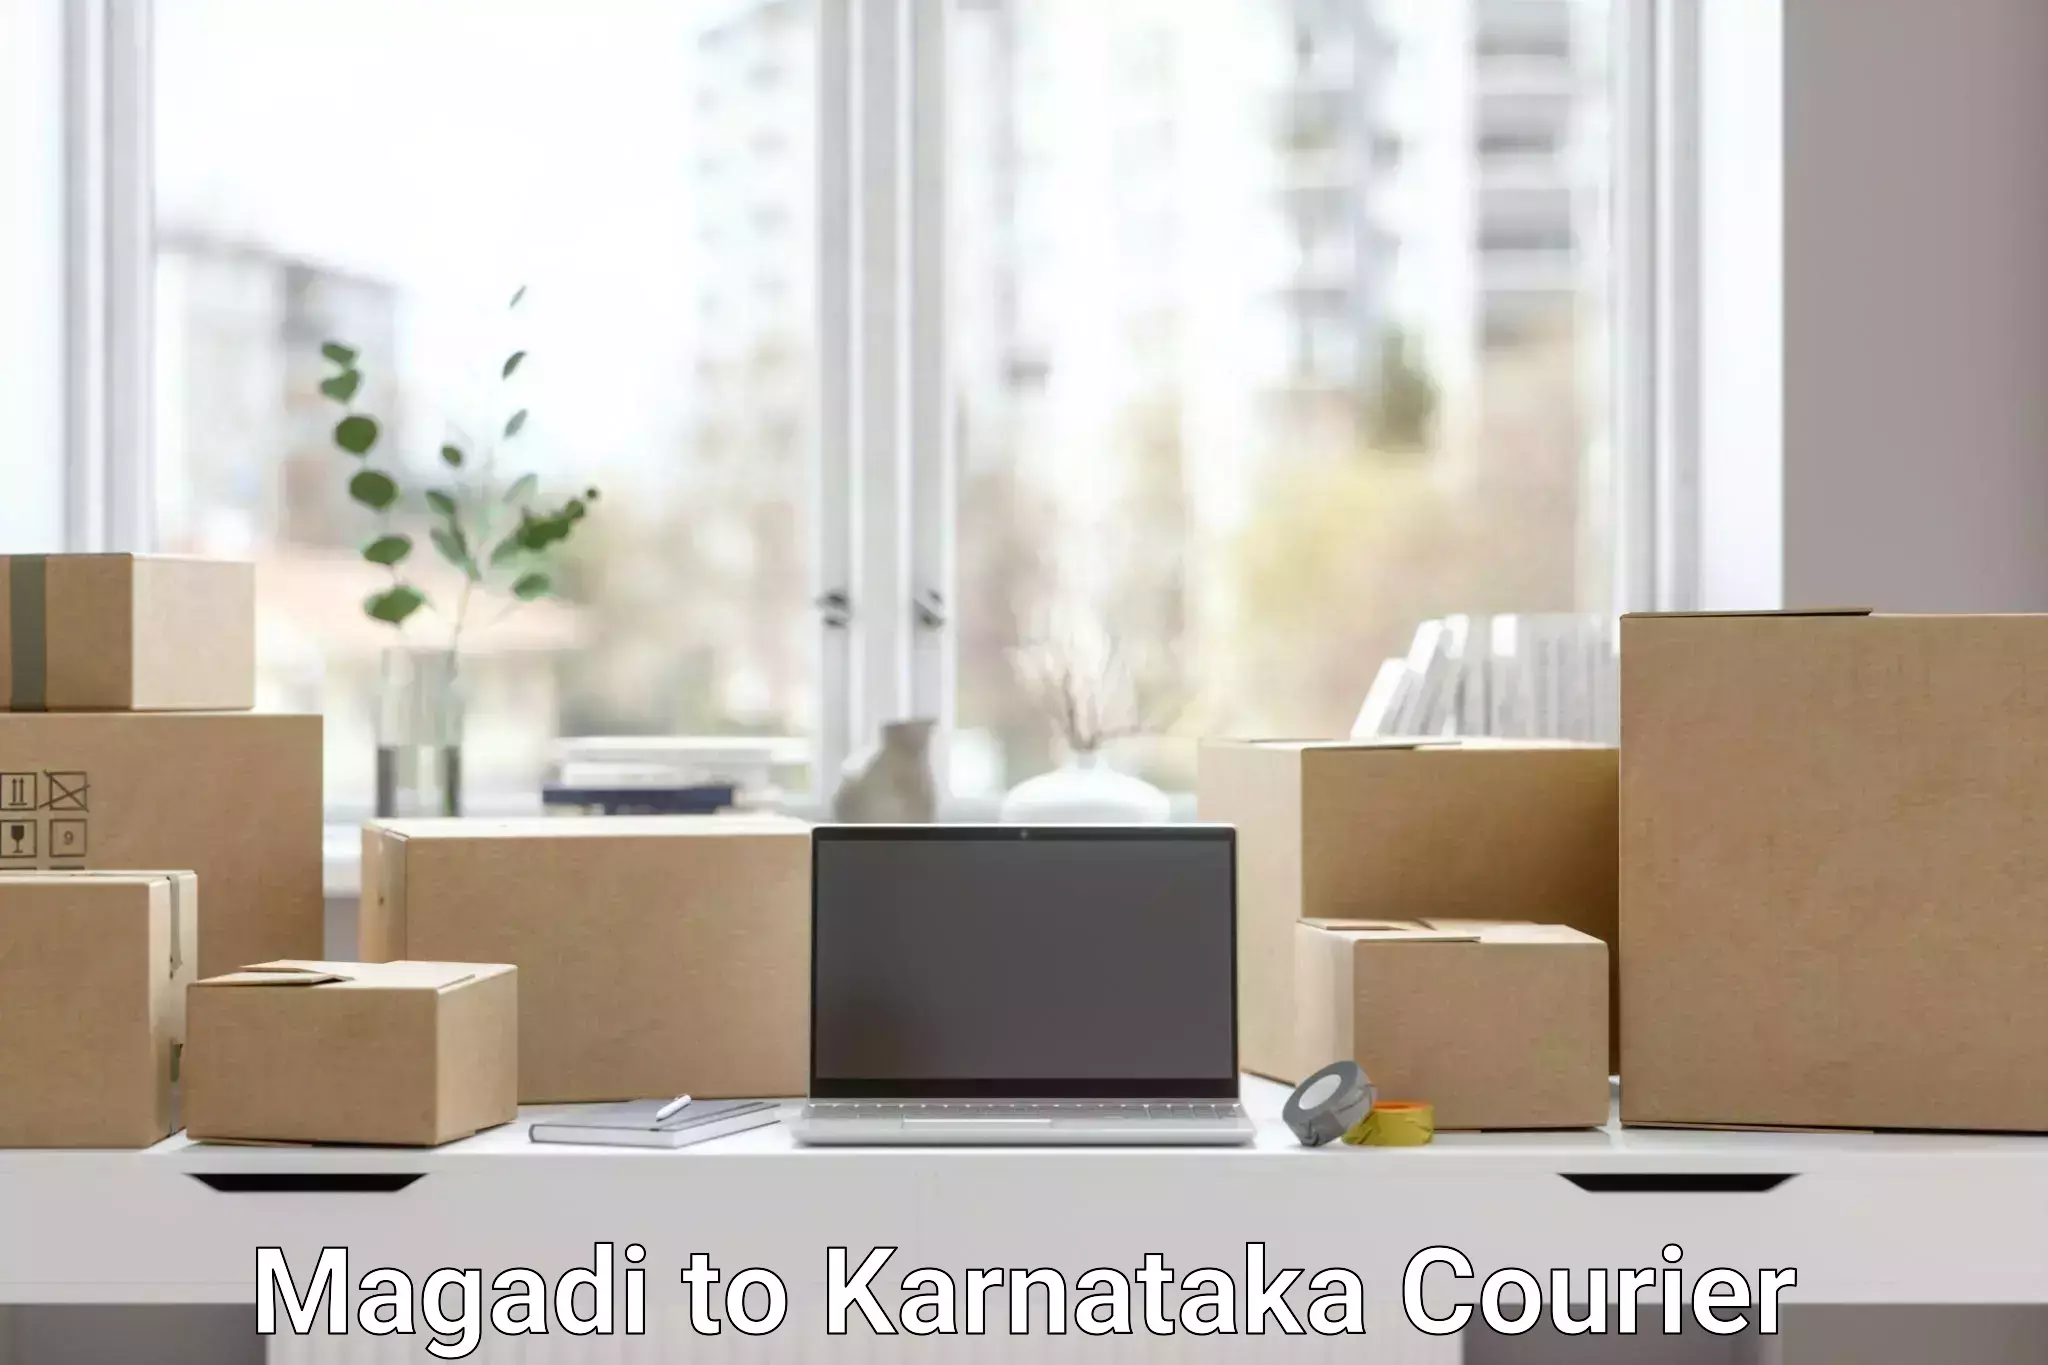 Small parcel delivery Magadi to Karnataka